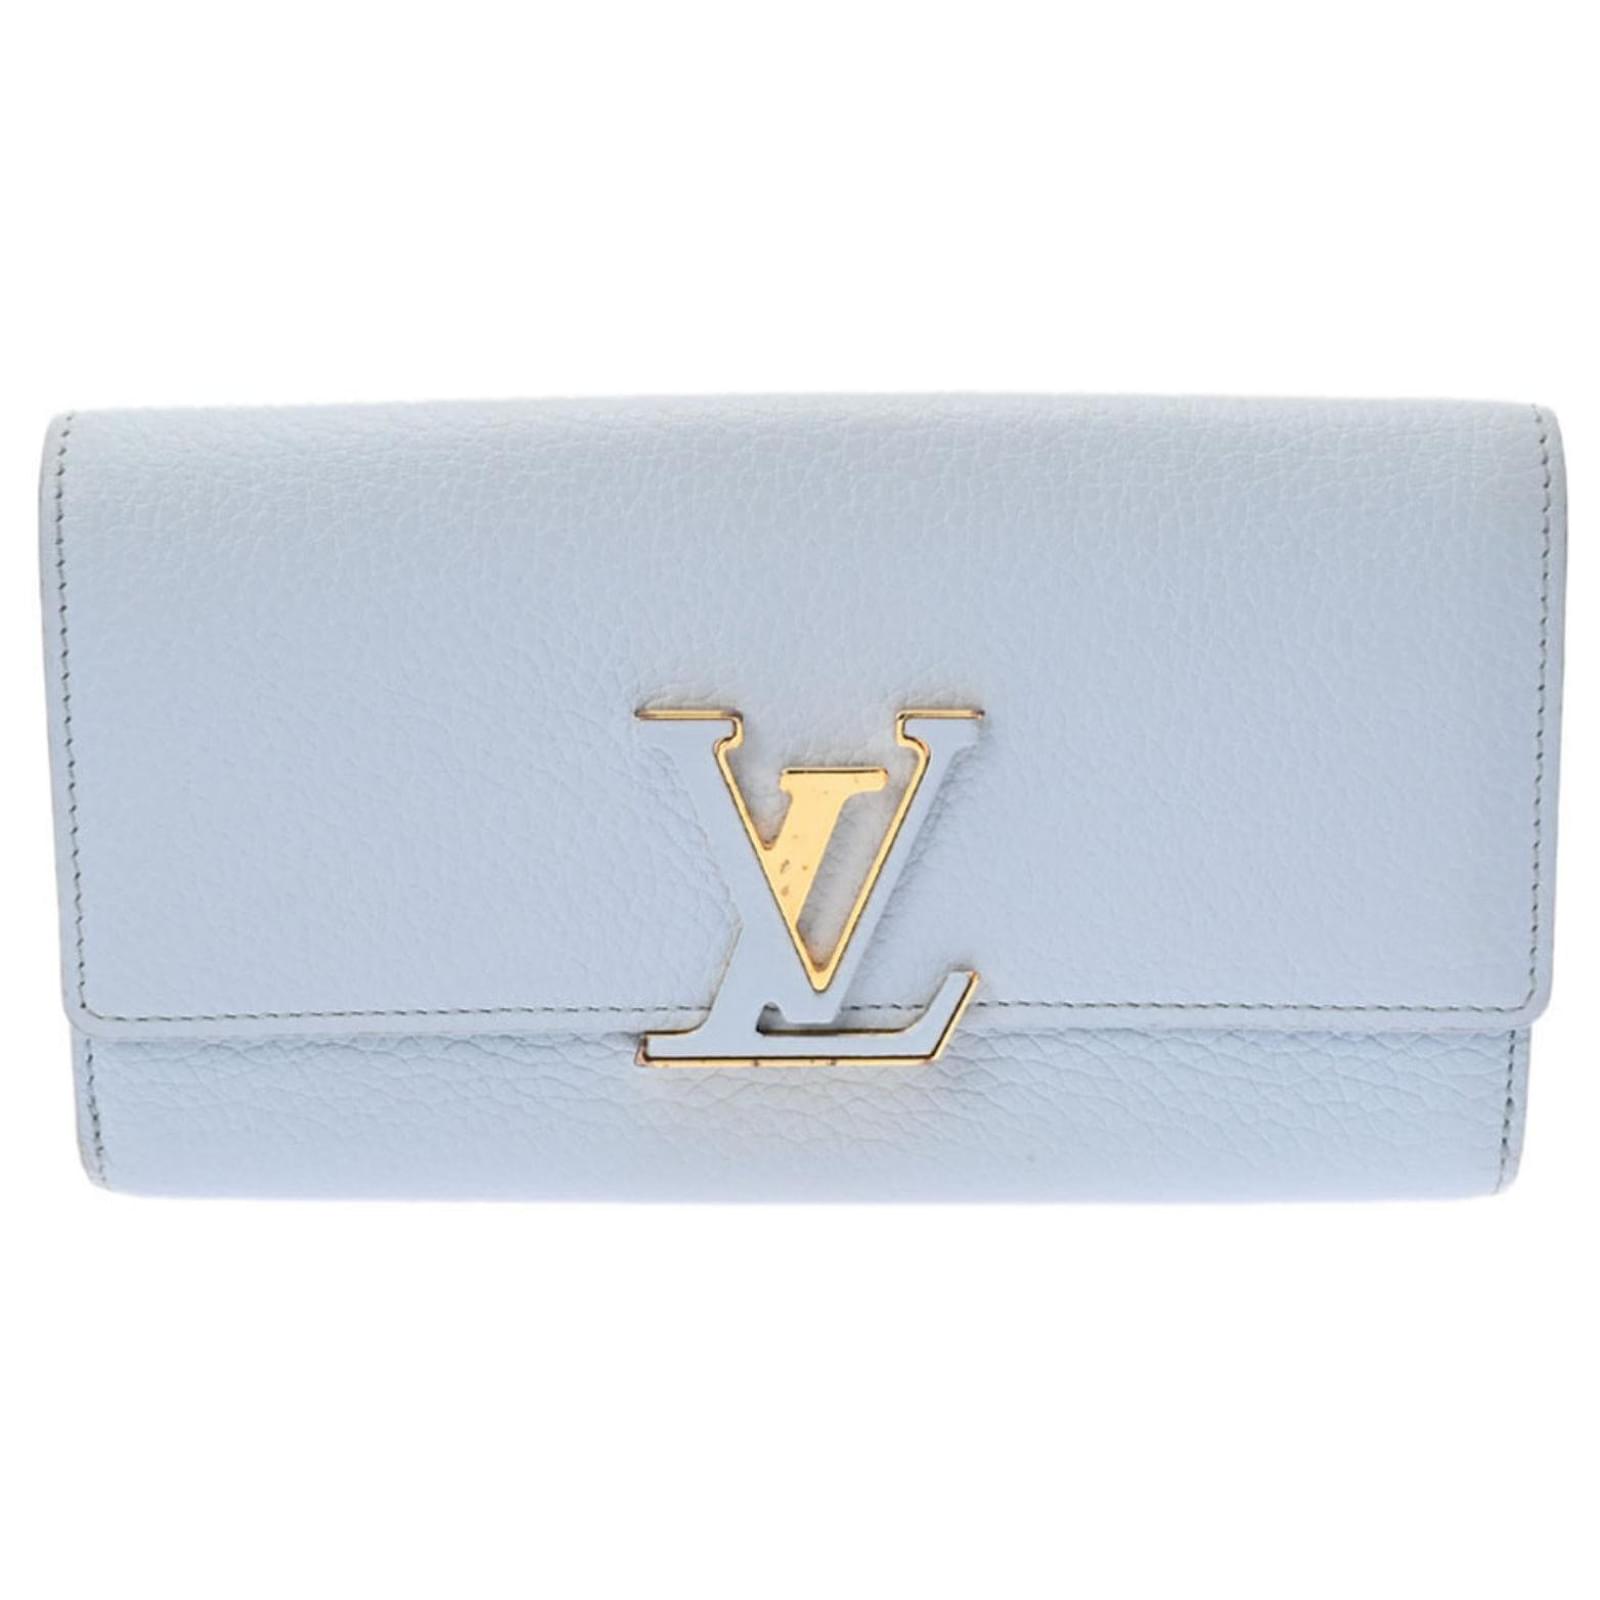 Louis Vuitton, Bags, Louis Vuitton Baby Blue Capucines Baby Blue Bag